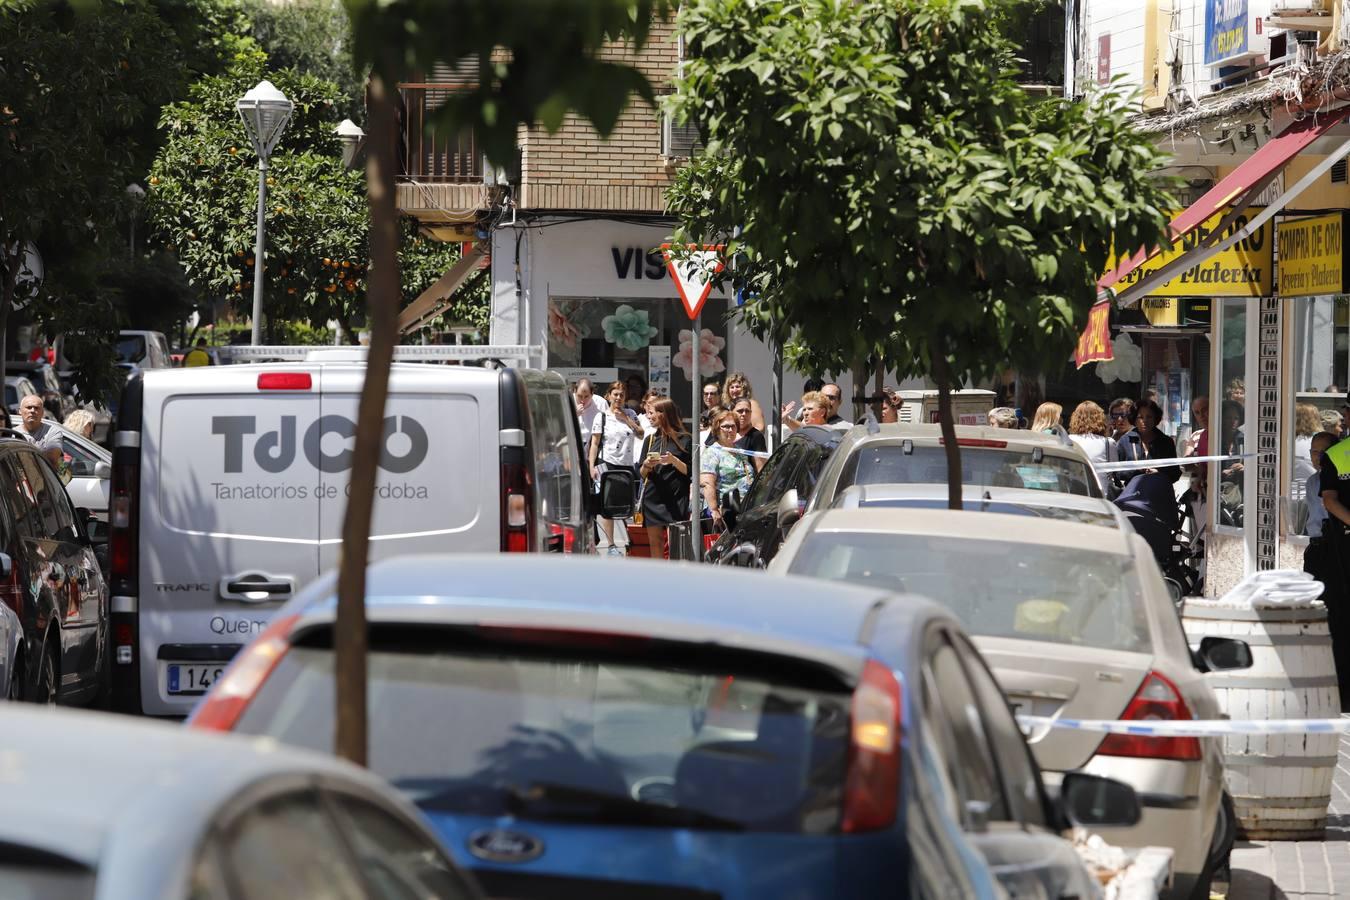 La muerte de una pareja en Córdoba por posible violencia de género, en imágenes